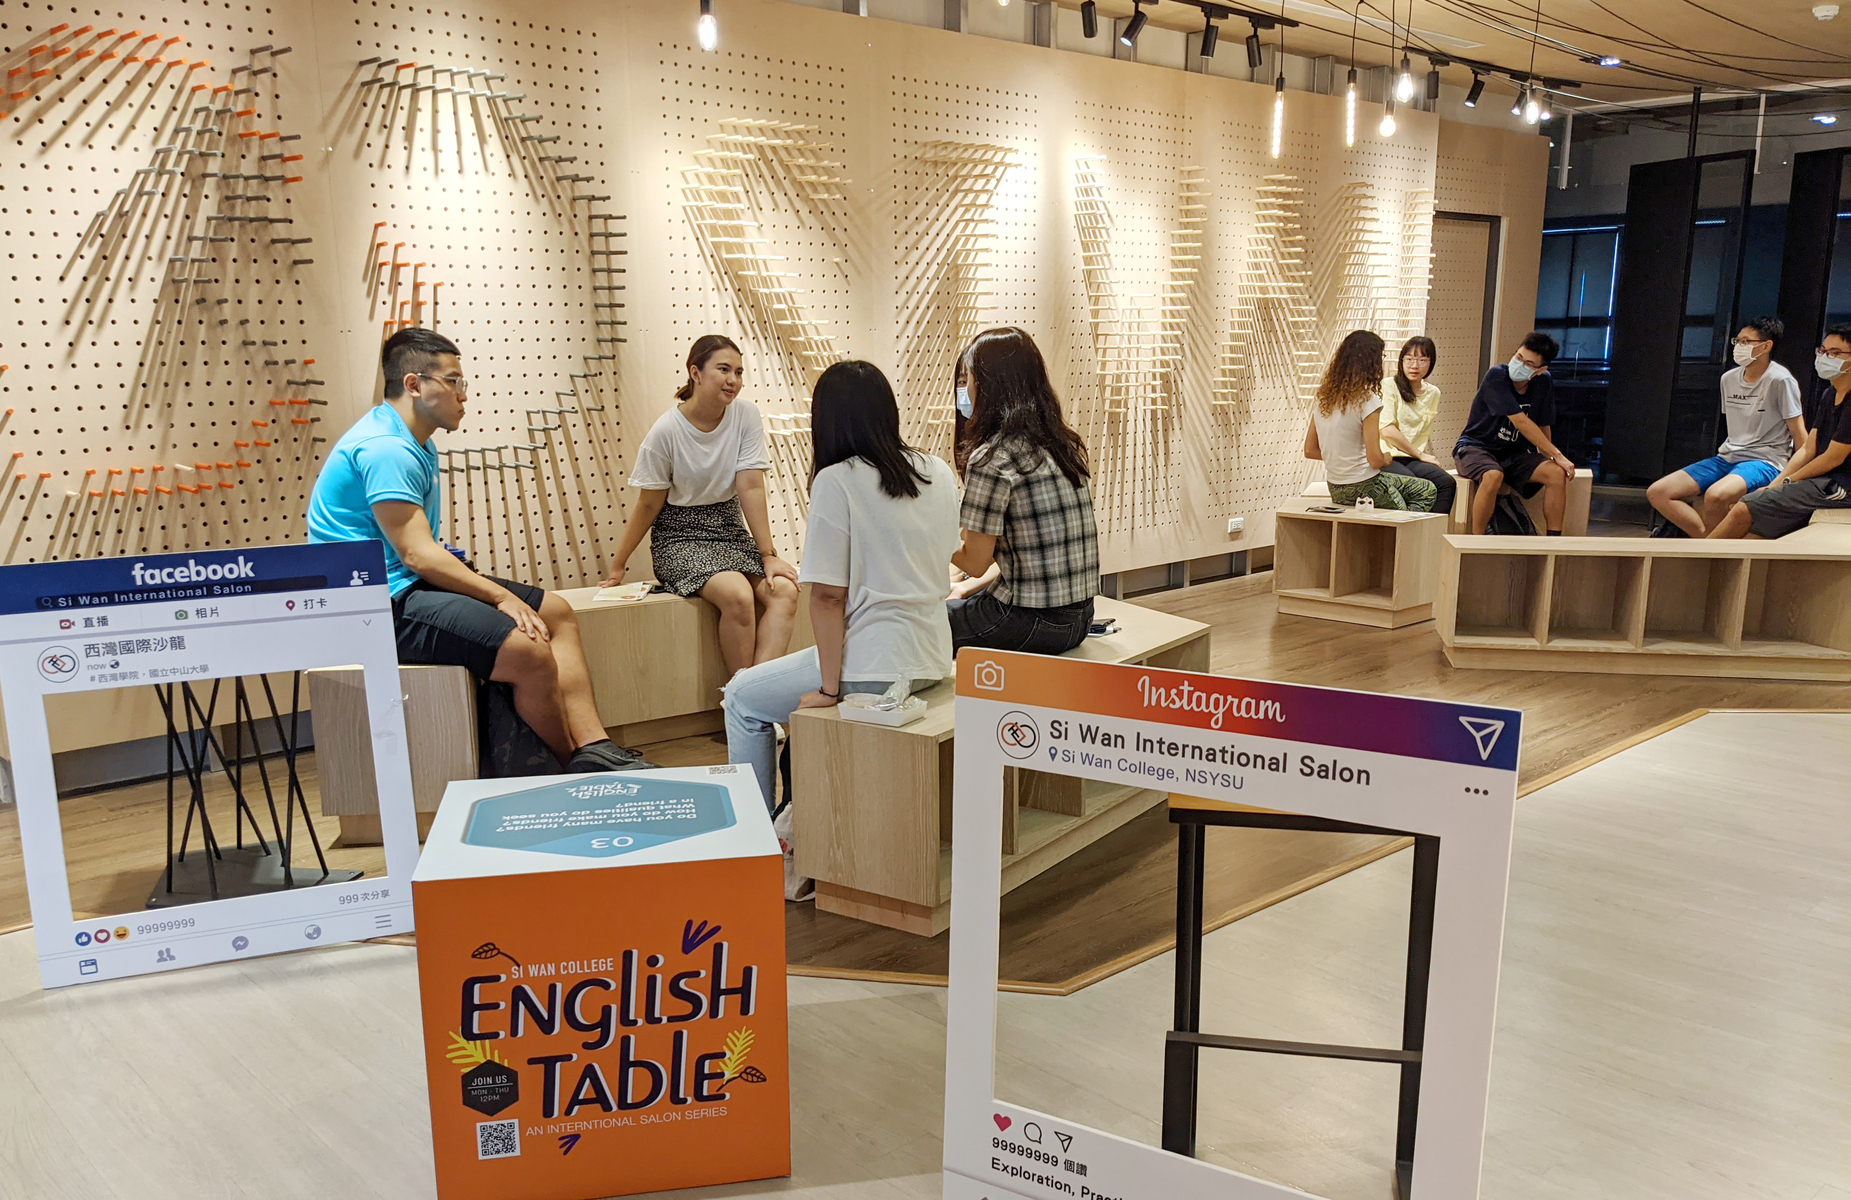 English Table